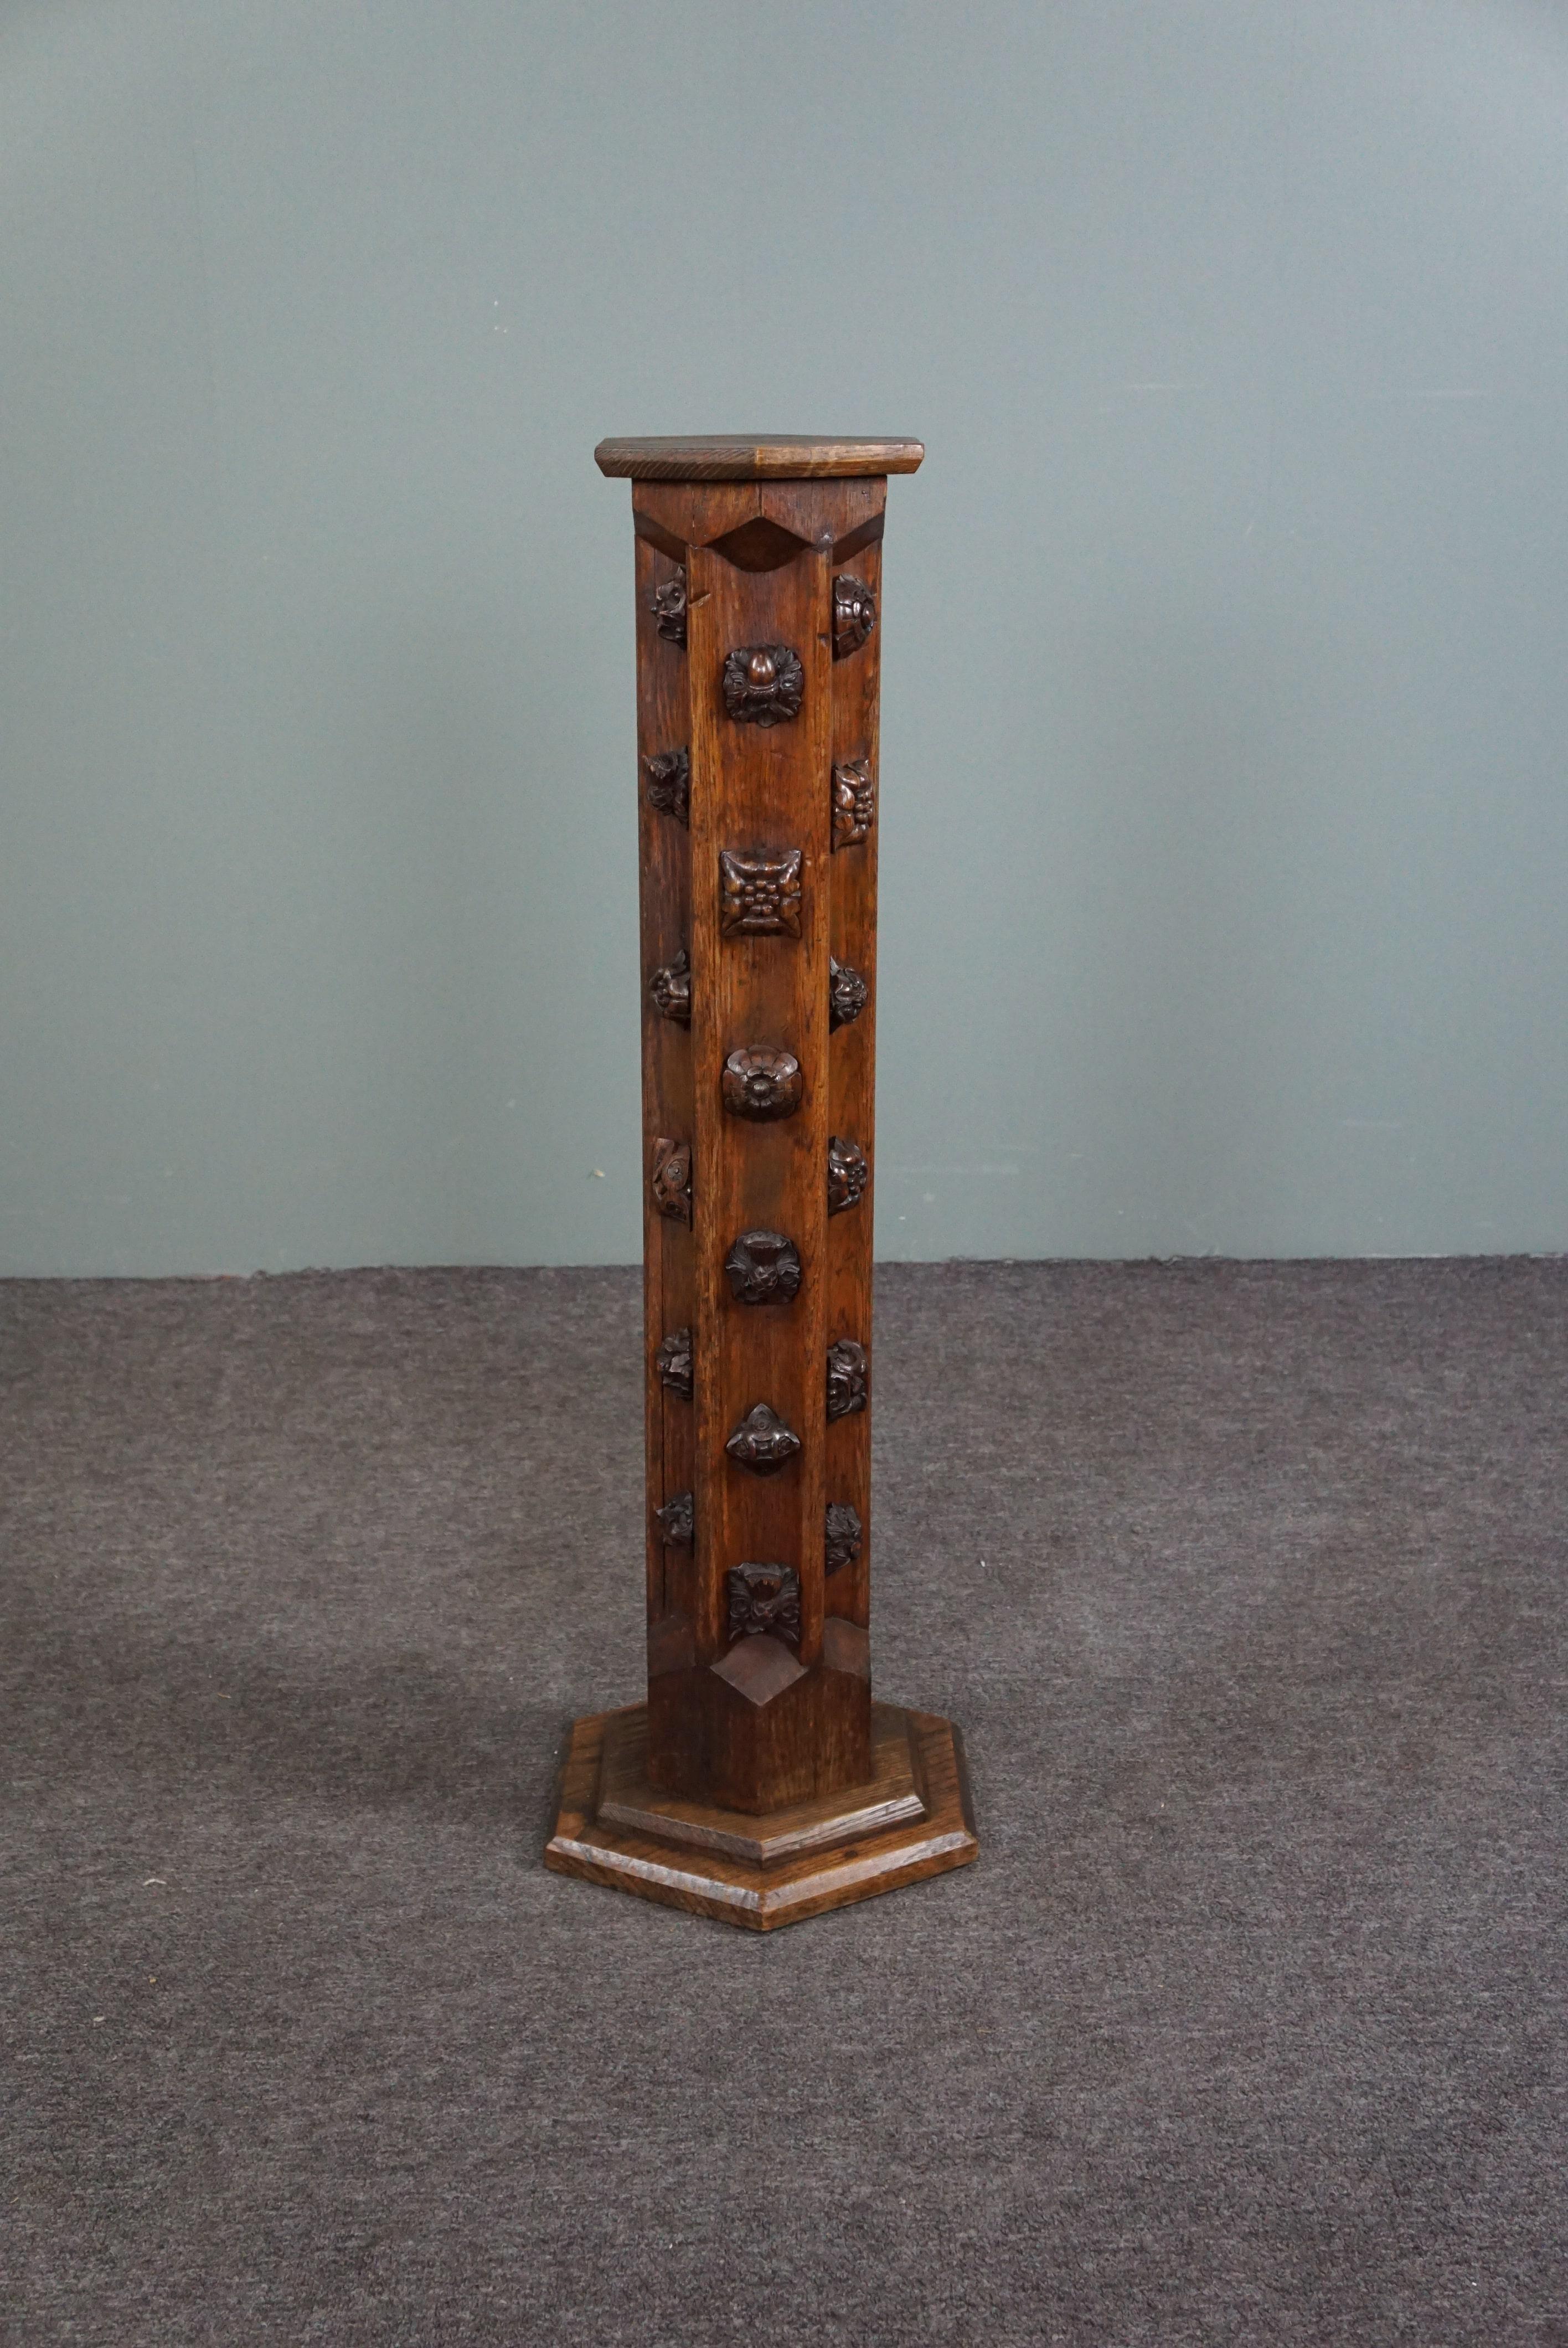 Il s'agit d'une colonne en bois très décorative datant de la fin du 19e siècle.

Ce pilier fait ressortir tous les objets qui y sont posés. Cet ensemble très décoratif peut donc être utilisé à des fins multiples. Cet article peut être utilisé aussi